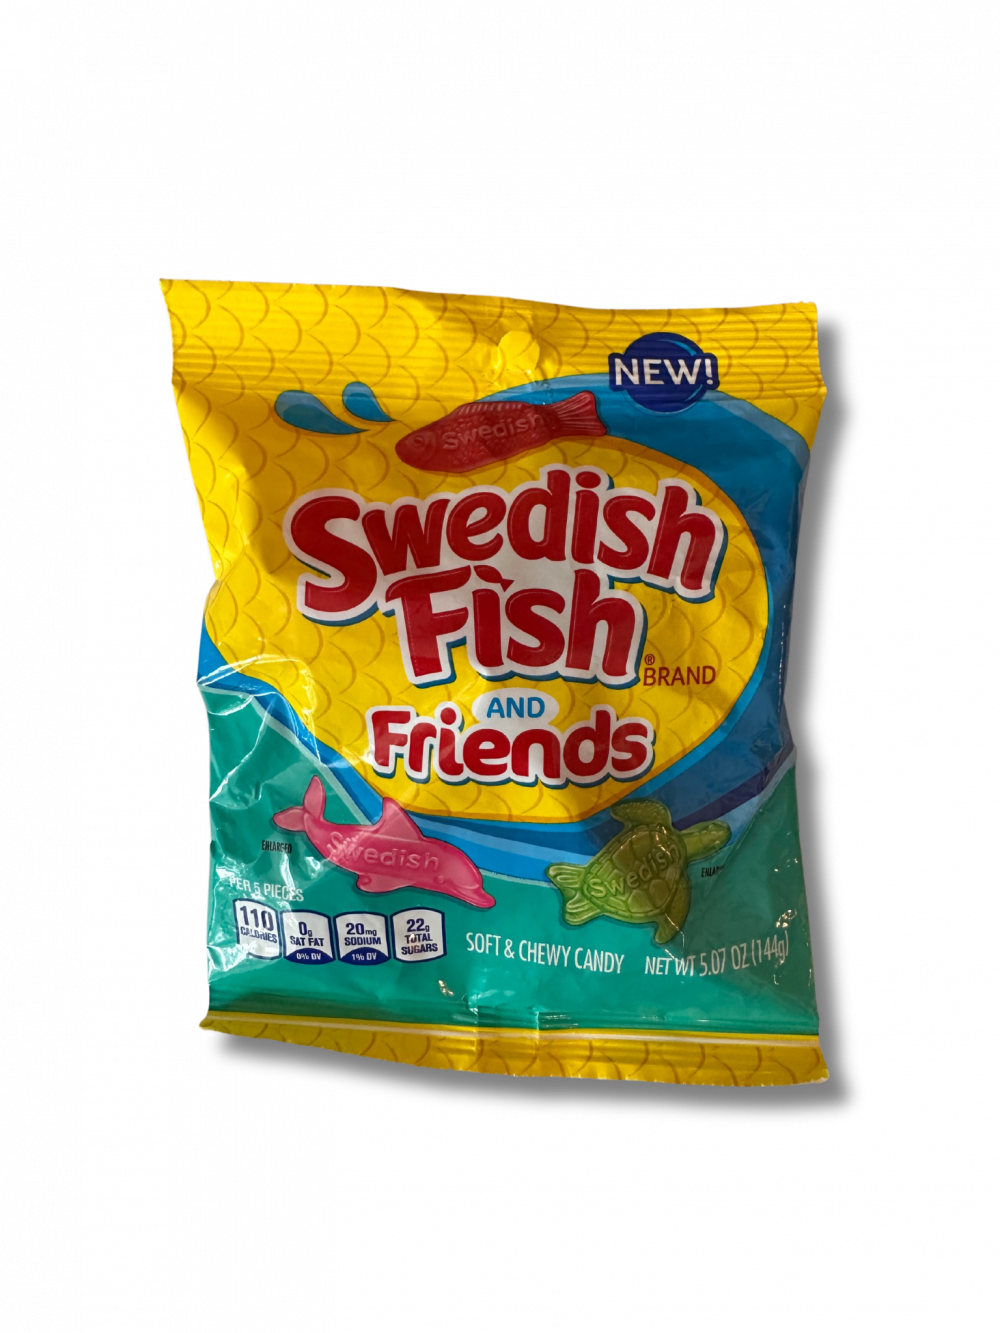 Mit Swedish Fish and Friends erhältst du eine lustige und köstliche Mischung aus verschiedenen Meereskreaturen in Form von Fruchtgummi. Jeder Biss ist eine Geschmacksexplosion und ein Meer an Spaß. […] - Breddas Hemp & Sweets Company Wuppertal